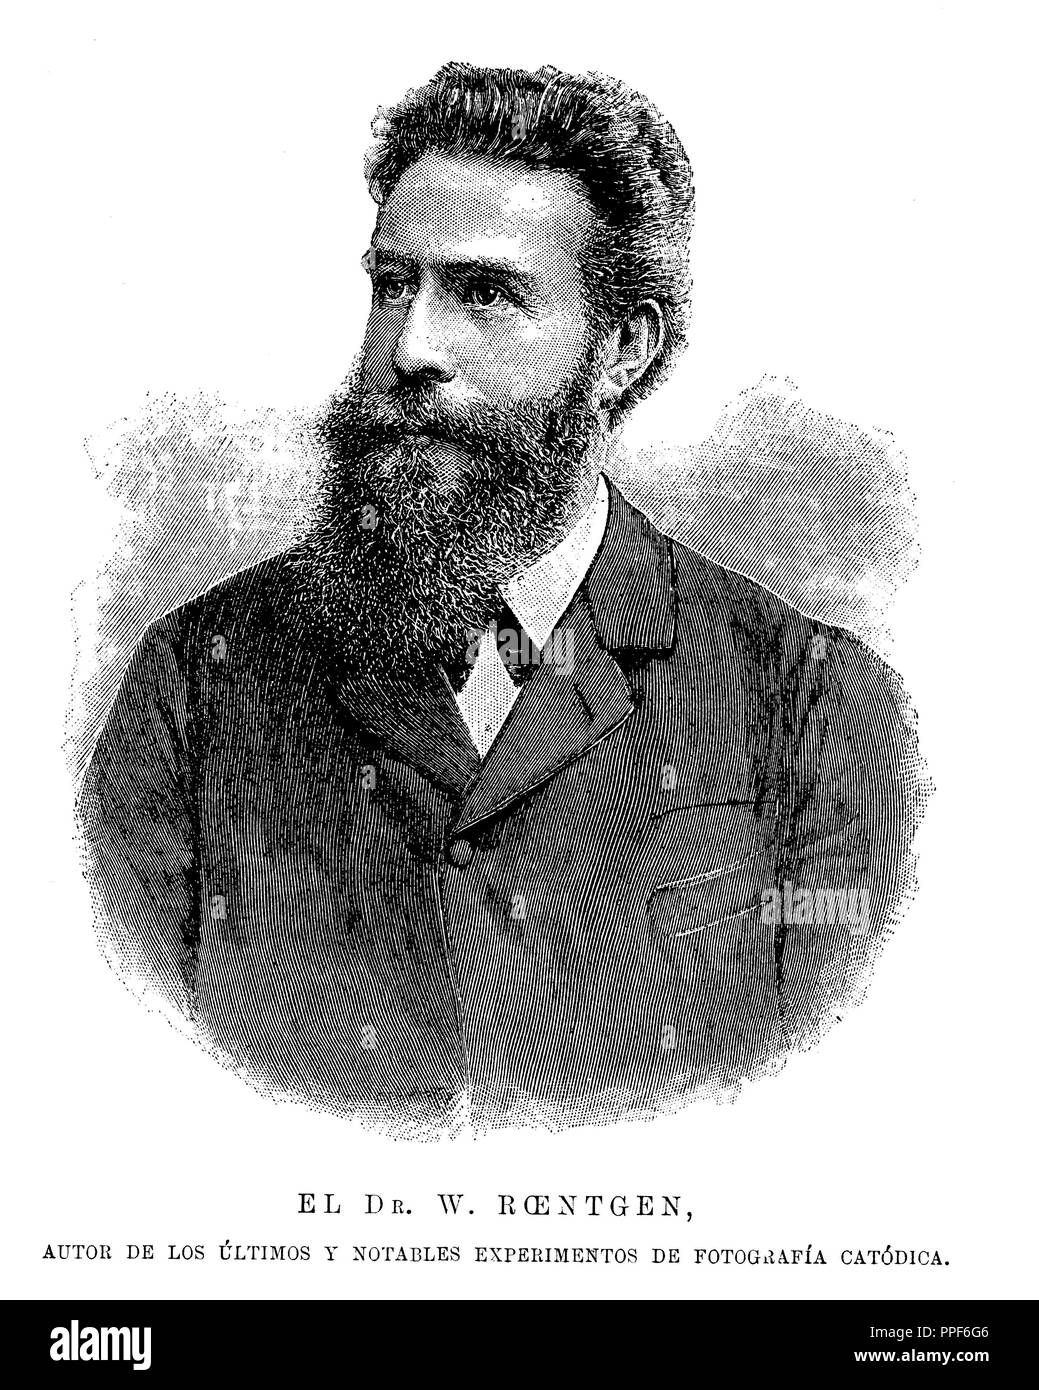 Wilhelm Conrad Röntgen (Lennep, 1845-Monaco di Baviera, 1923). Fisico tedesco, scopritore della 'raggi X'. Premio Nobel per la fisica nel 1901. Incisione, 1896. Foto Stock